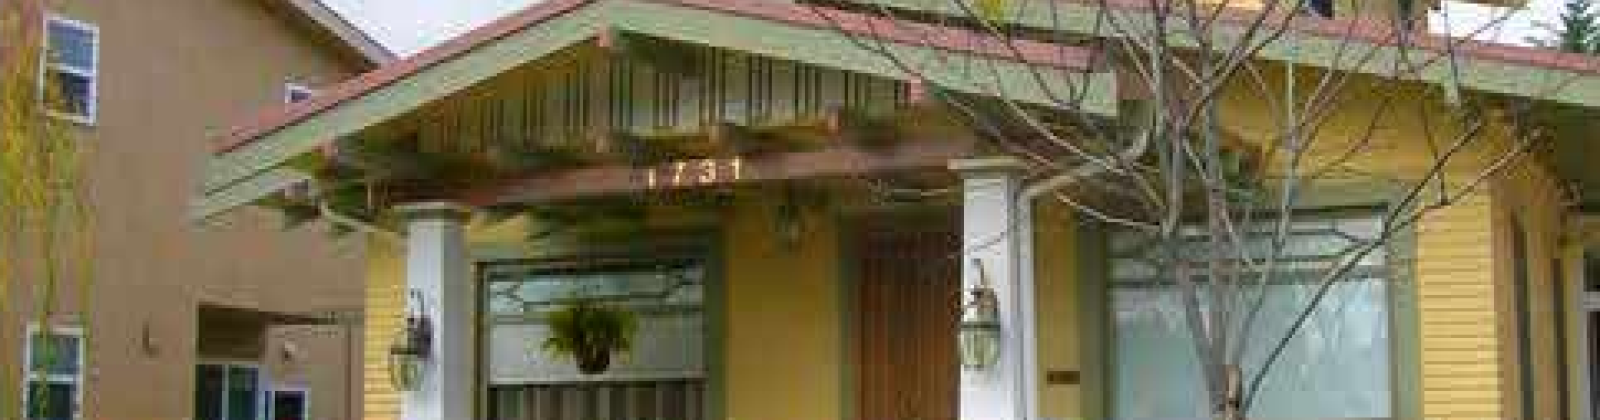 1731 Appleton St., Long Beach, California 90802, ,Shared Room in House,Lodging Fee,Haven House,Appleton,2,1001